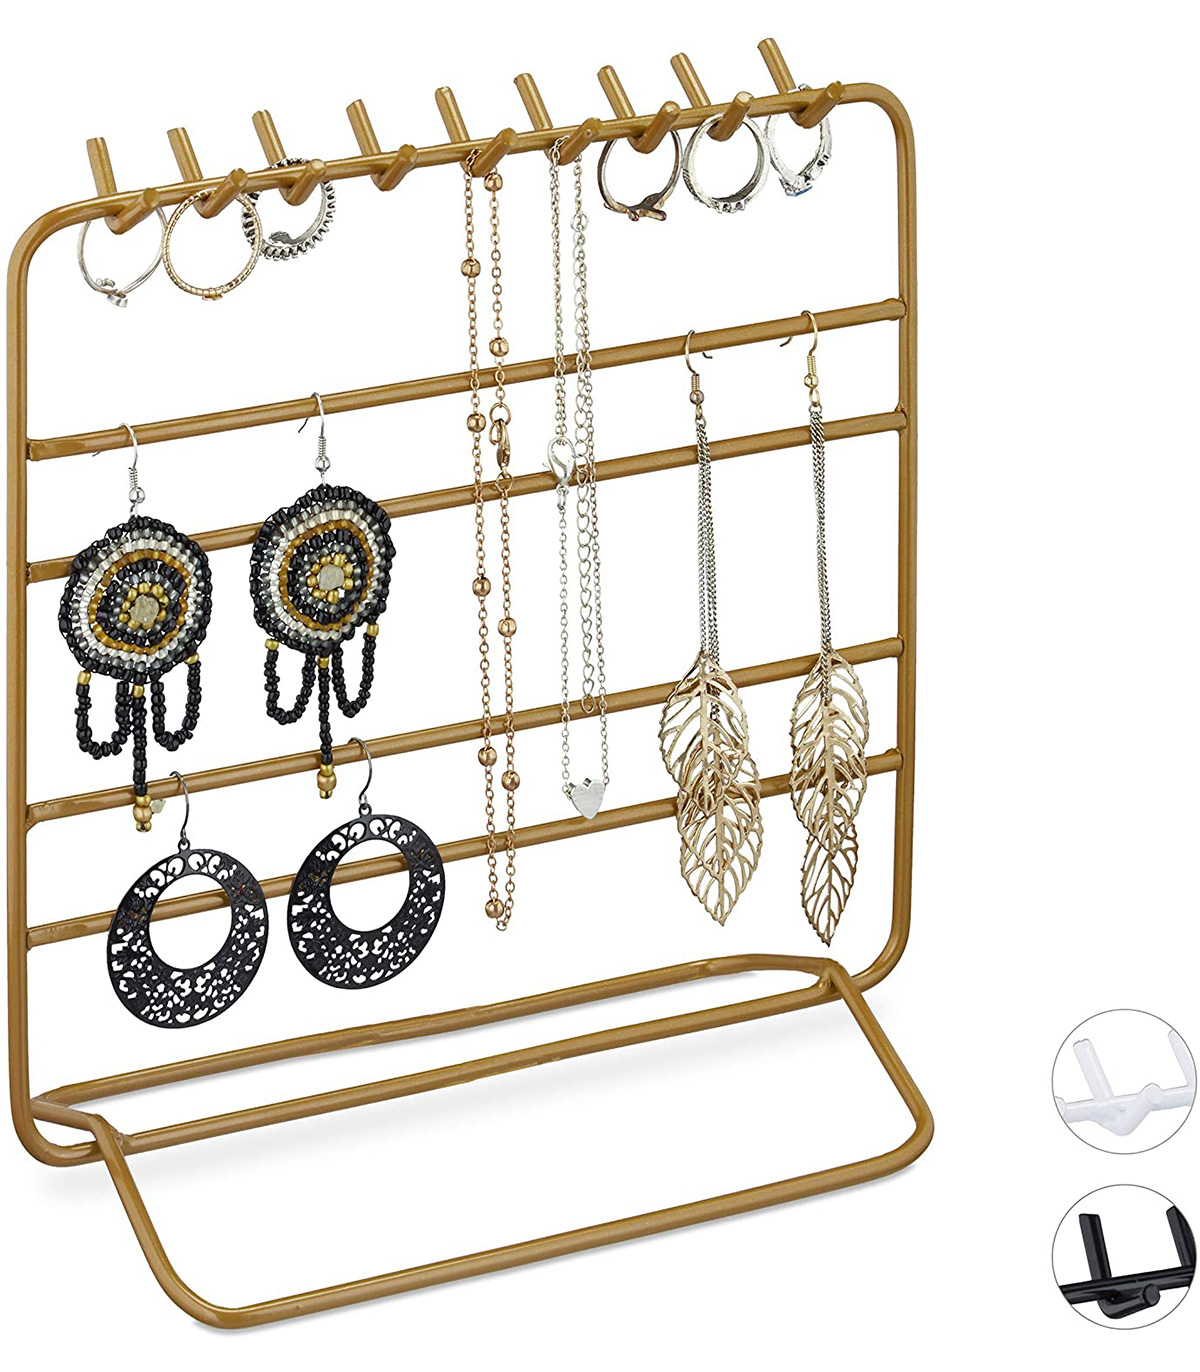 Organizator/suport pentru bijuterii, cercei, bratari, bijuterii, Auriu, 20 x 10 x 21 cm Auriu